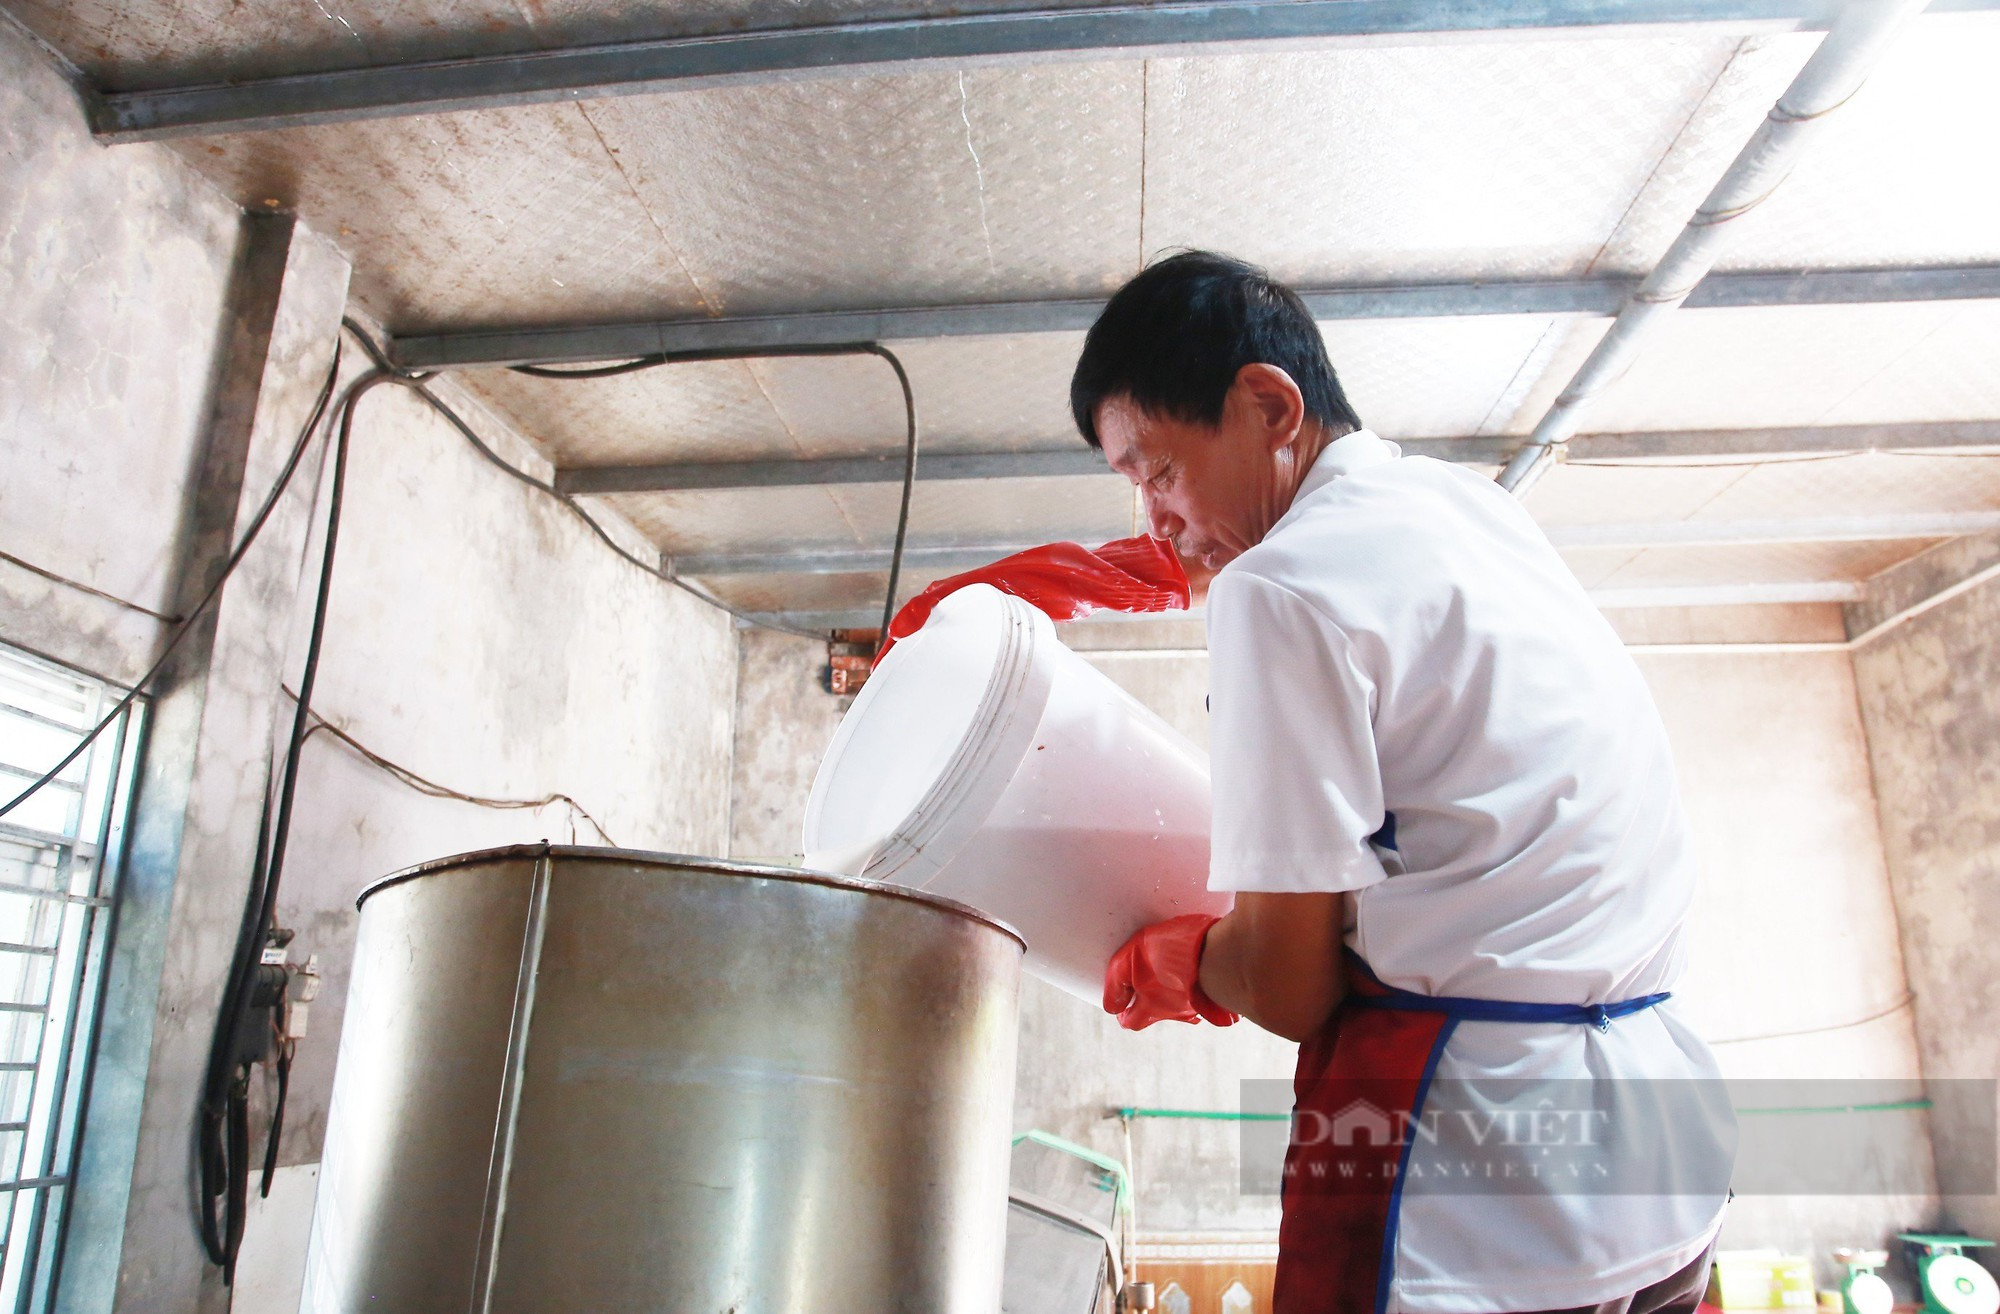 Áp dụng điều này, lão nông làm 100kg bánh gật gù đặc sản Quảng Ninh mỗi ngày mà vẫn nhàn tênh - Ảnh 1.